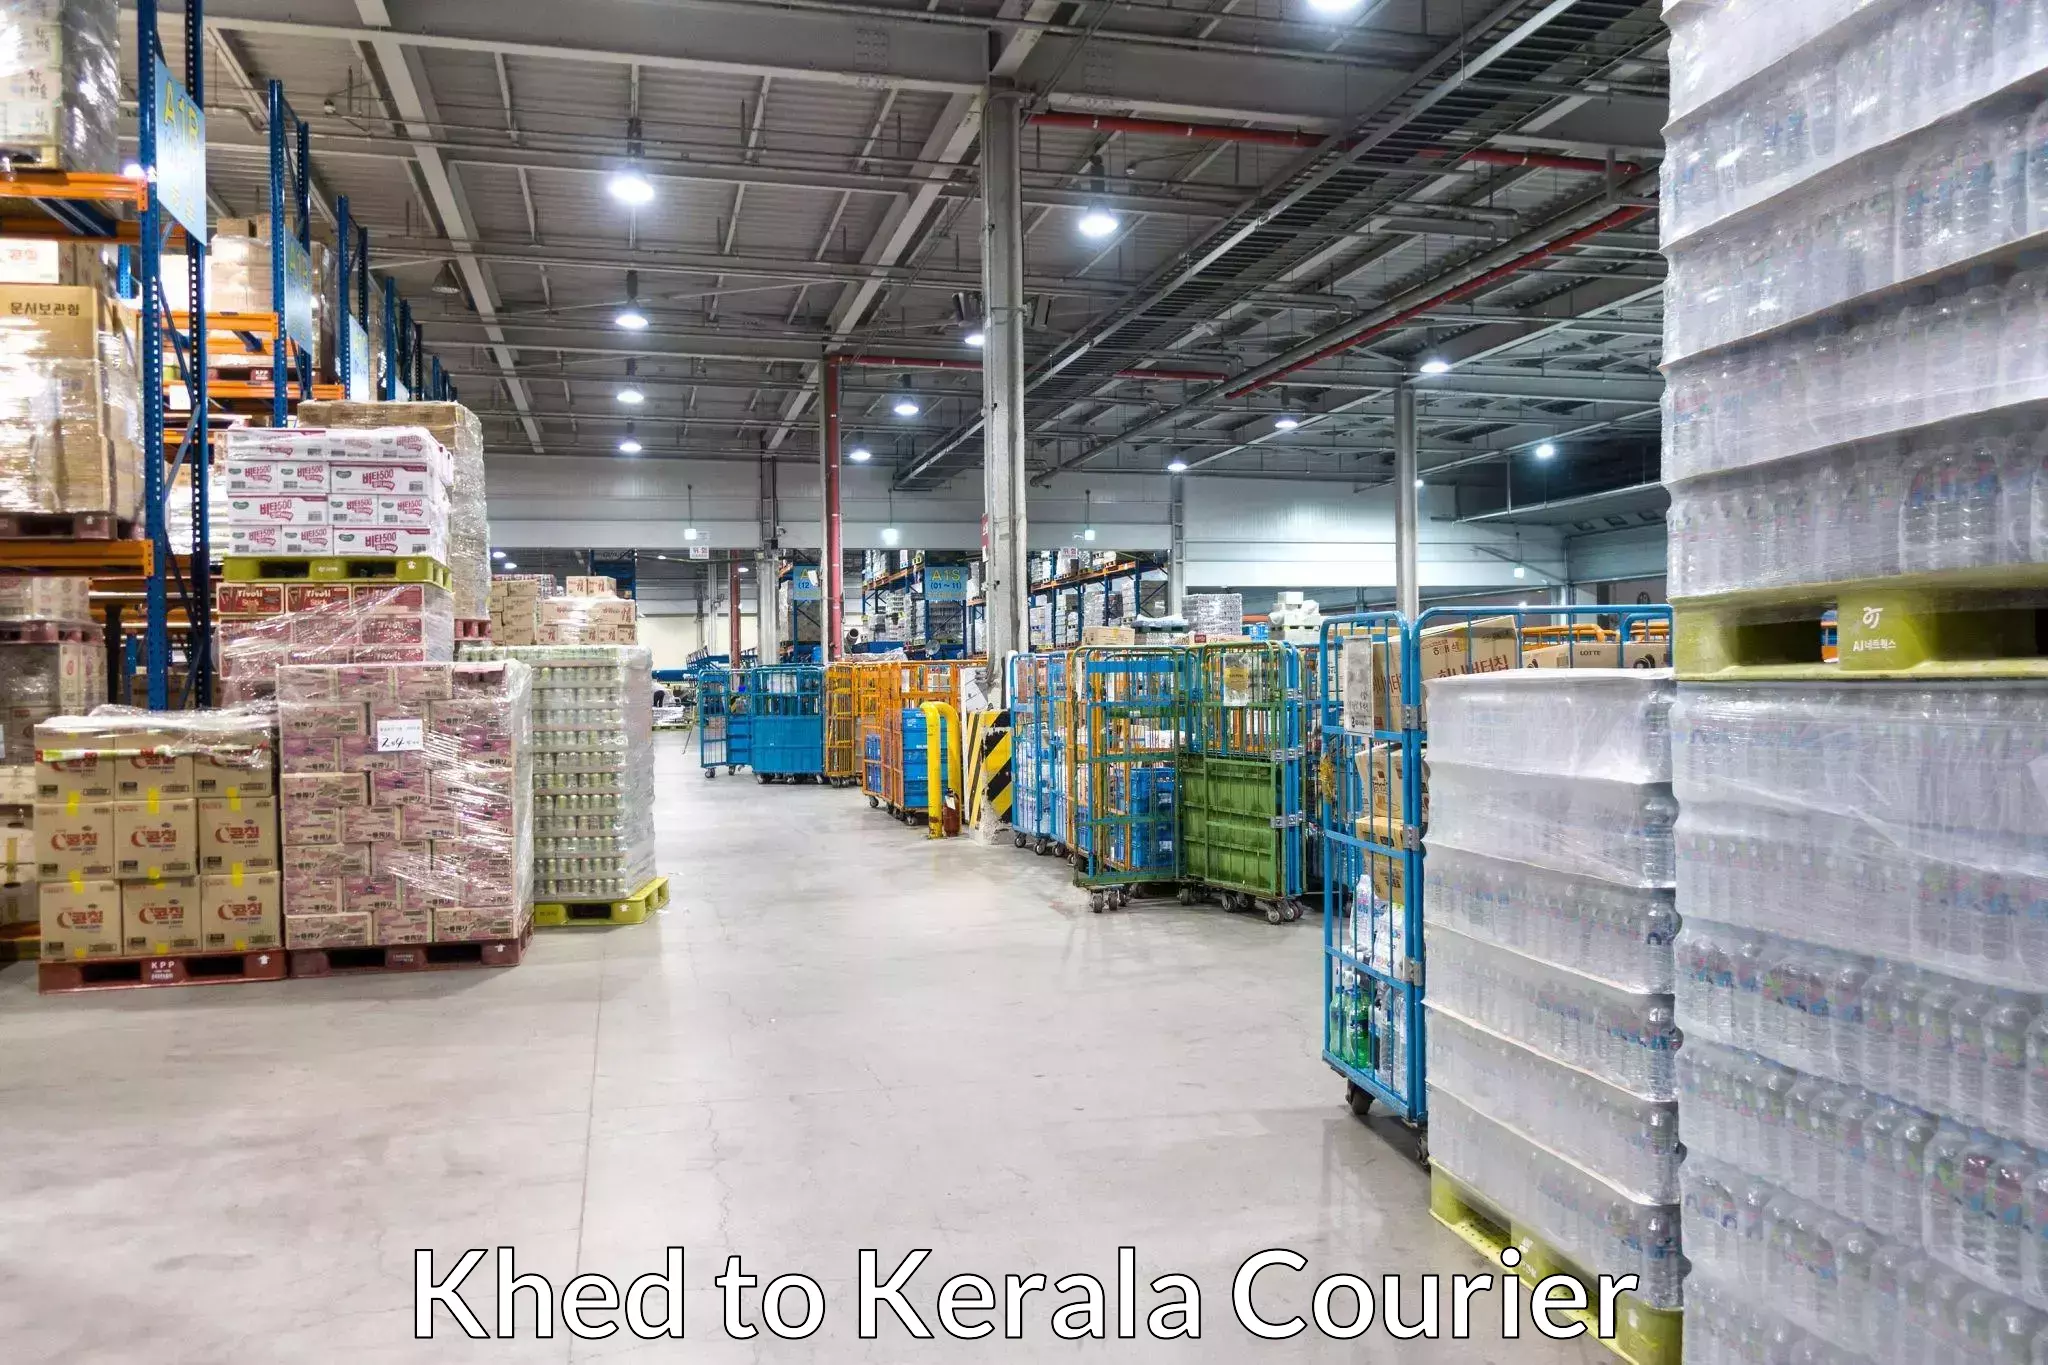 Efficient parcel service Khed to Adur Kla